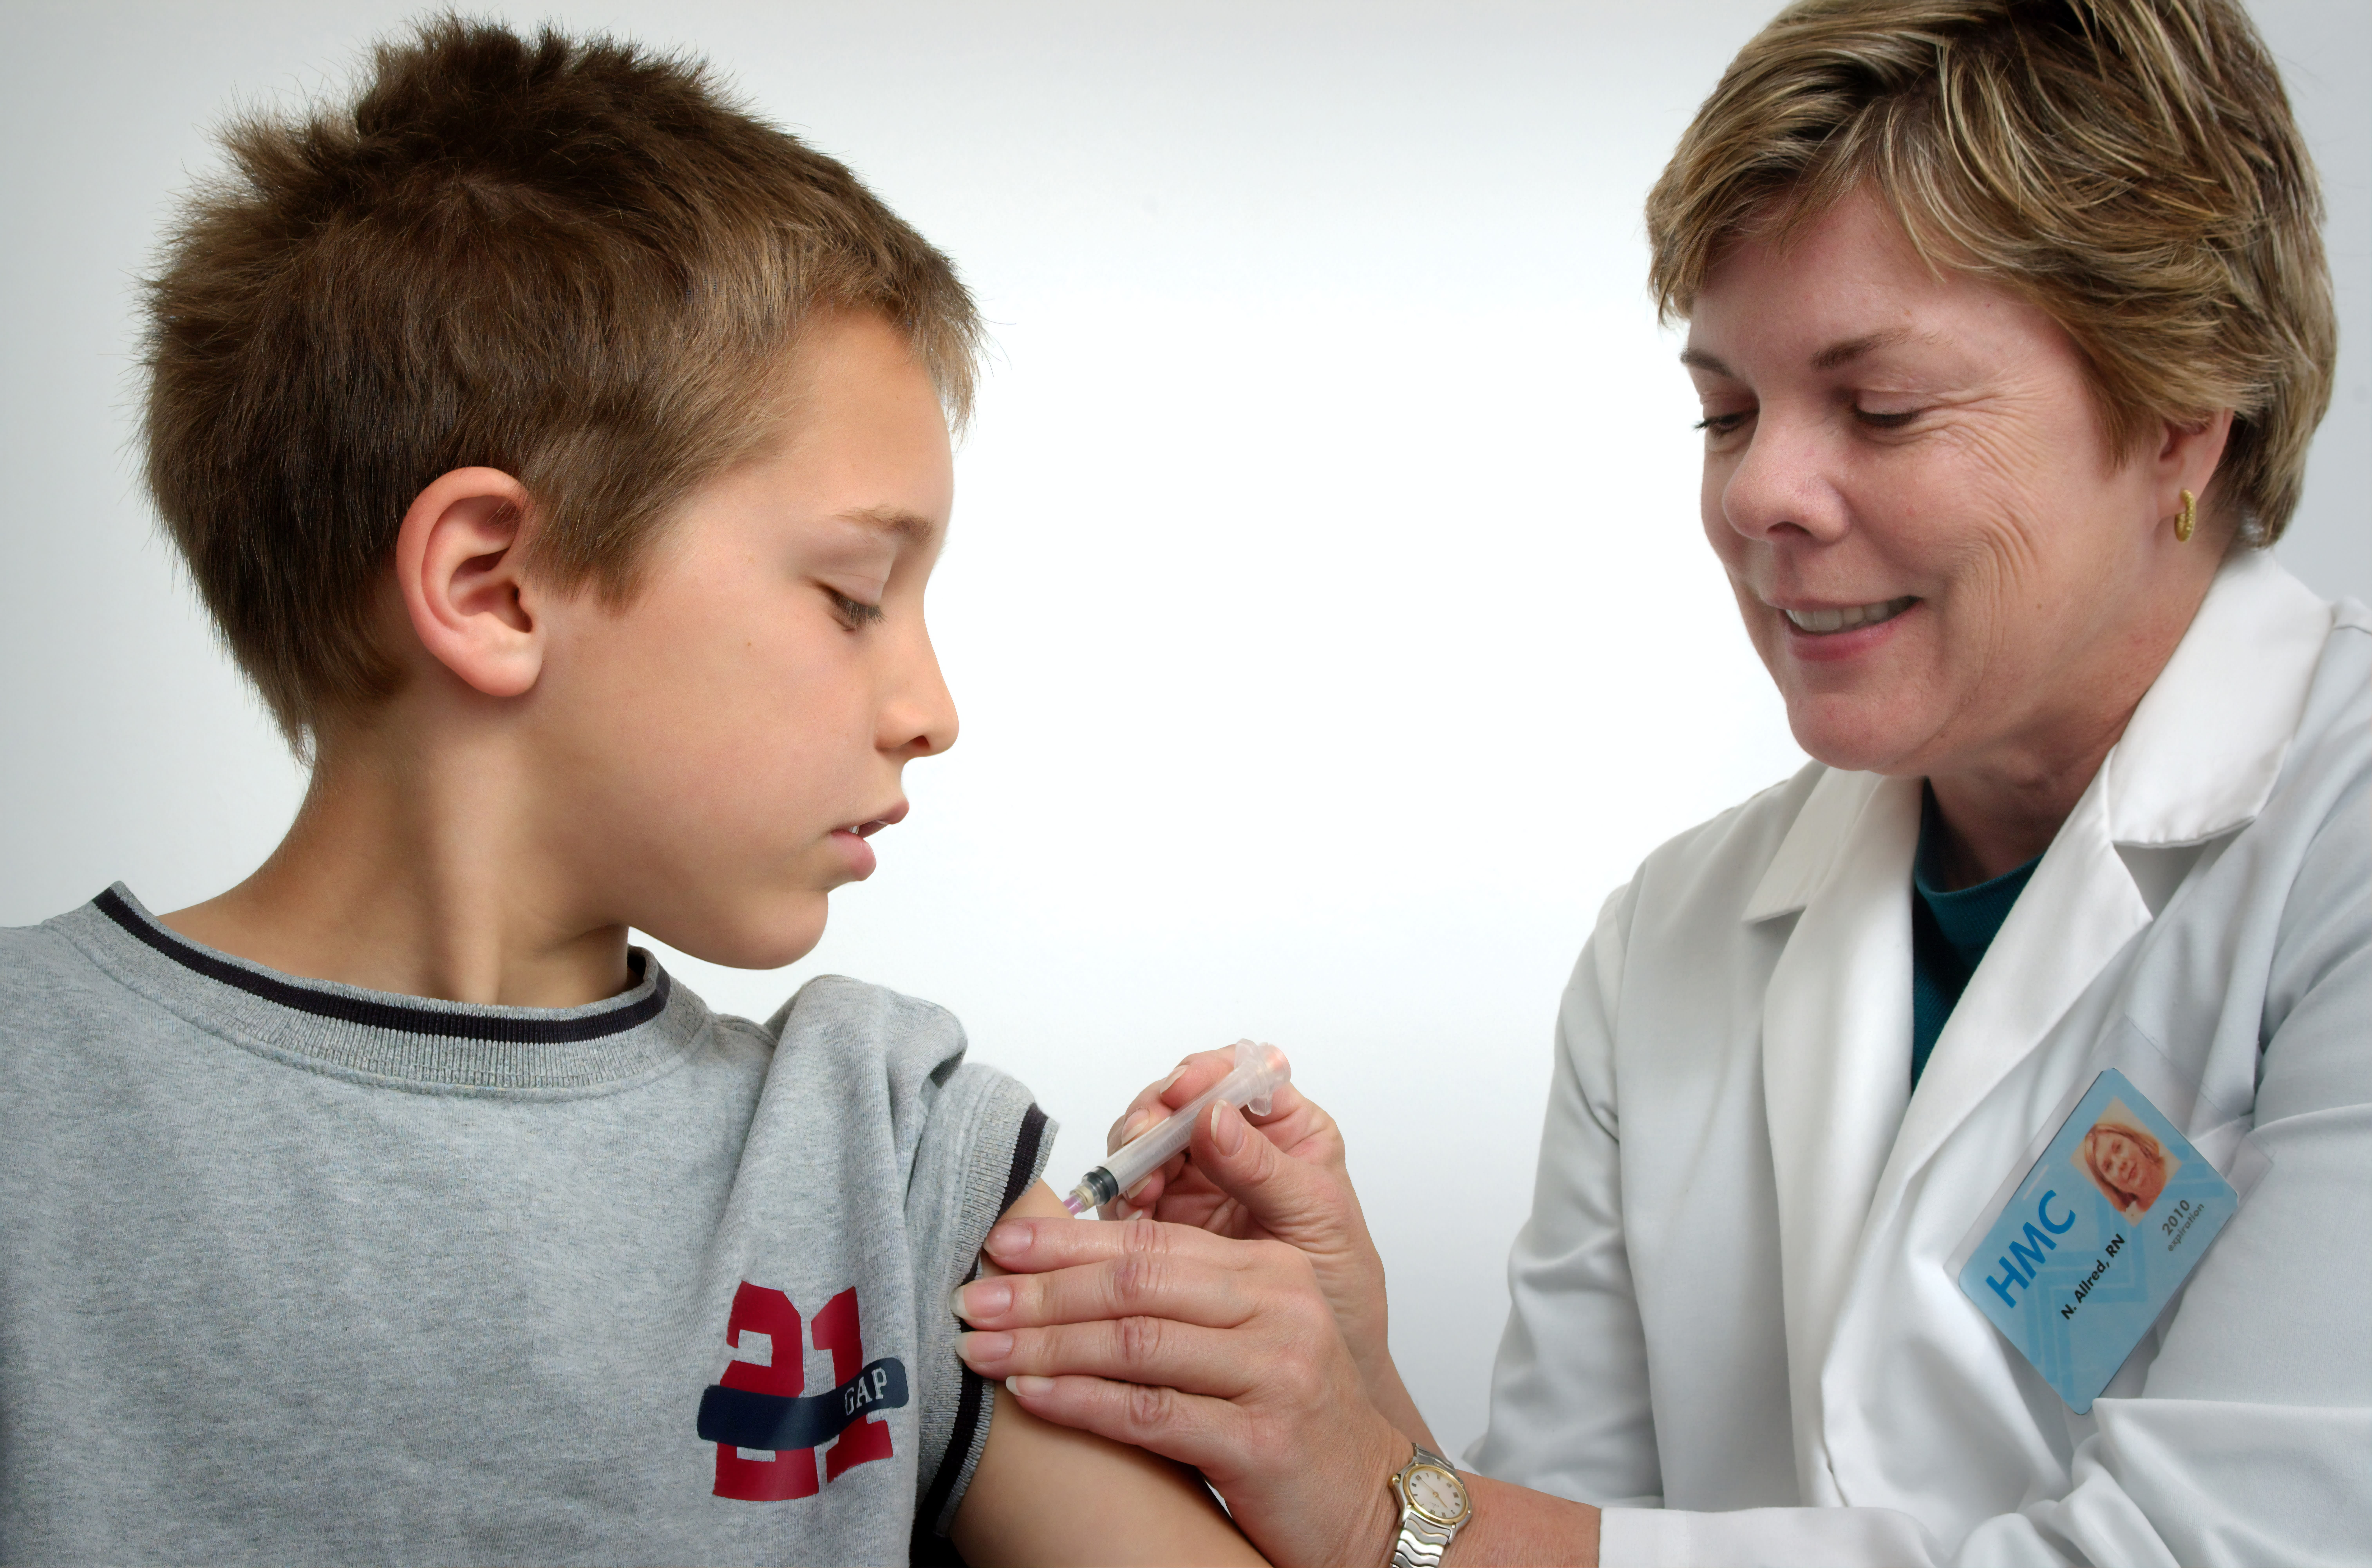 La enfermera representada en esta fotografía de 2006 estaba administrando una vacuna intramuscular en el hombro izquierdo de un niño.La enfermera estaba pellizcando la piel del hombro para inmovilizar el lugar de la inyección.